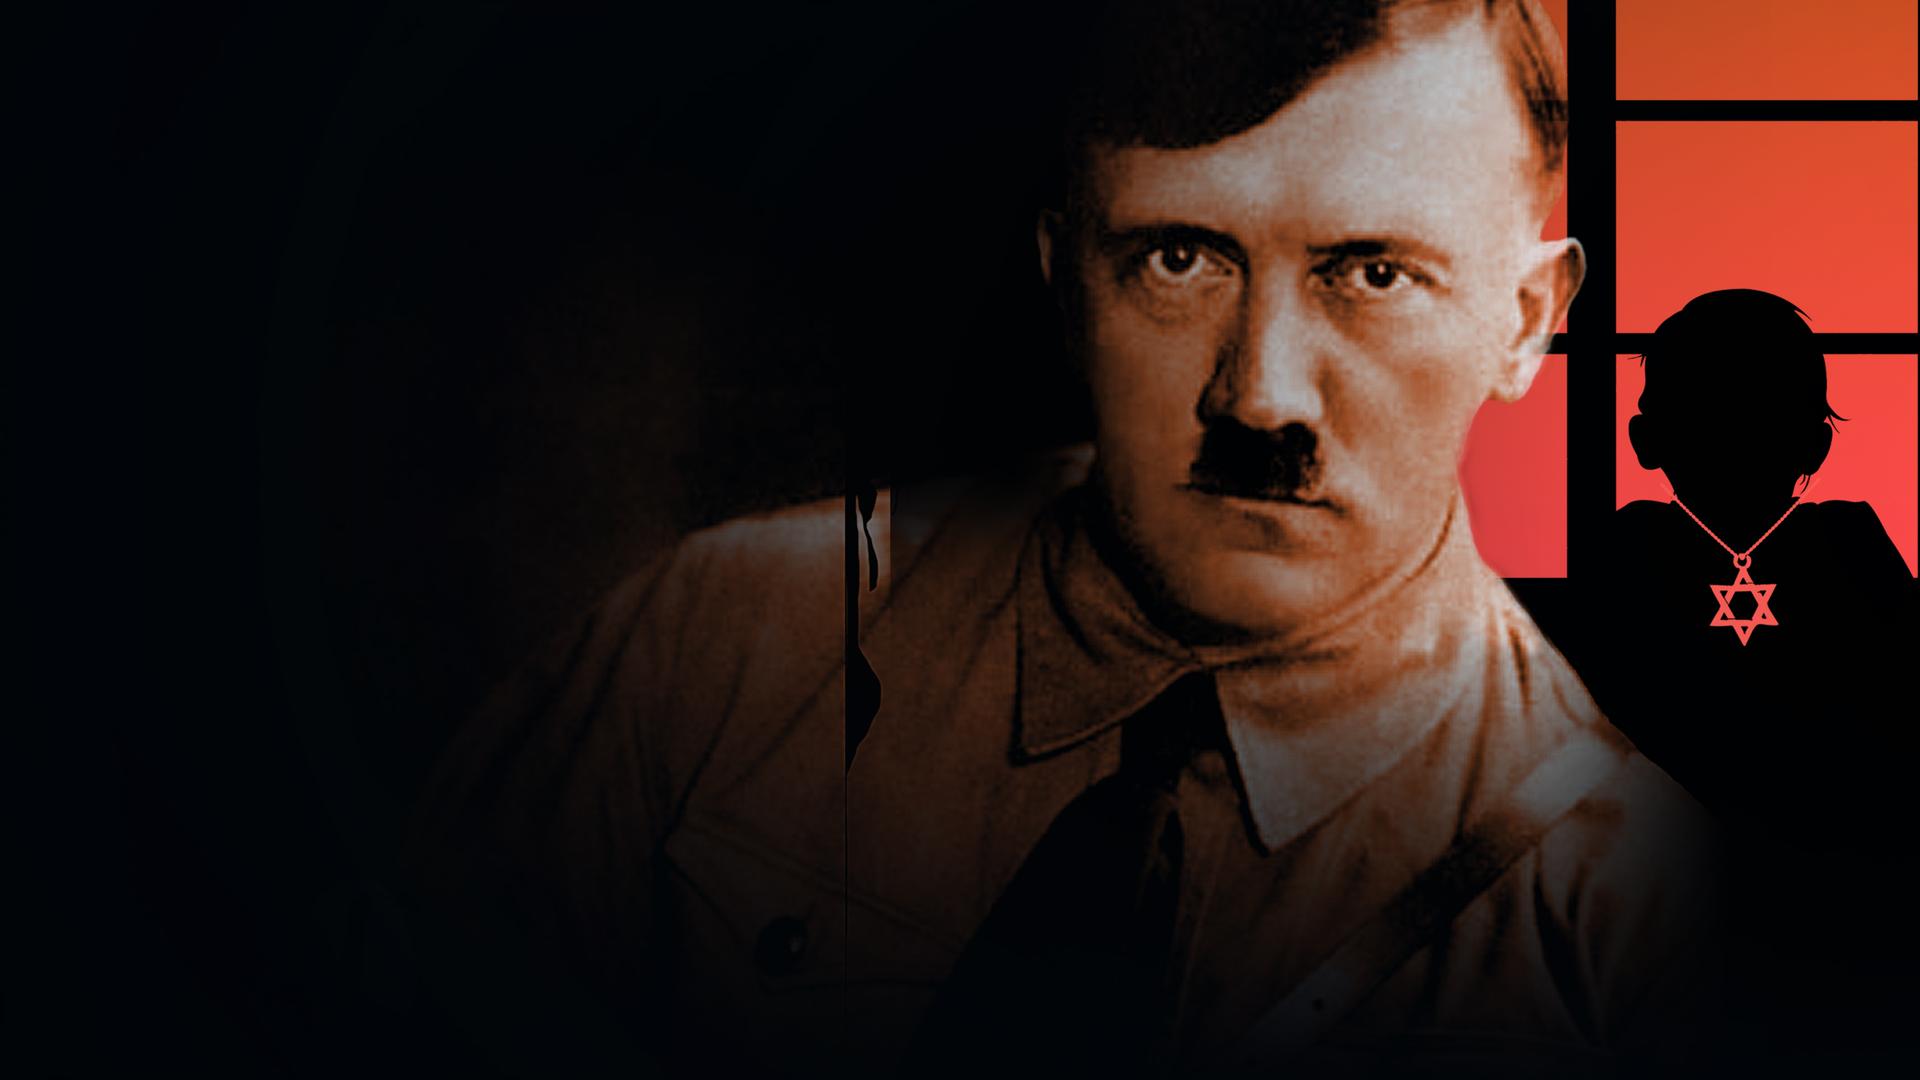 Hitler is My Neighbor